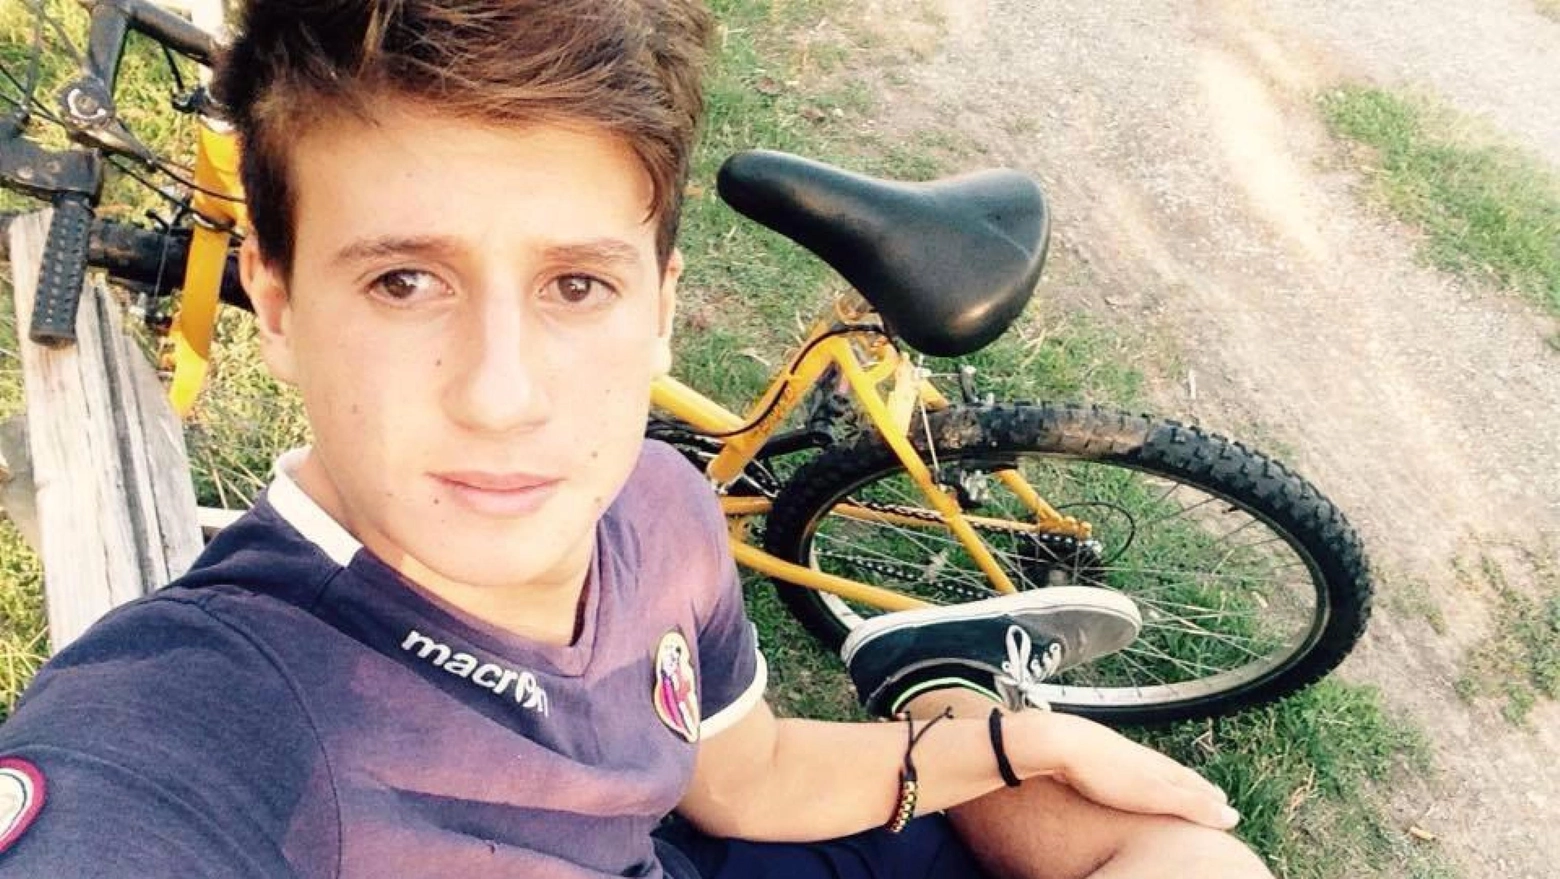 Davide Ferrerio, pestato a Crotone lo scorso 11 agosto: da allora è in coma irreversibile